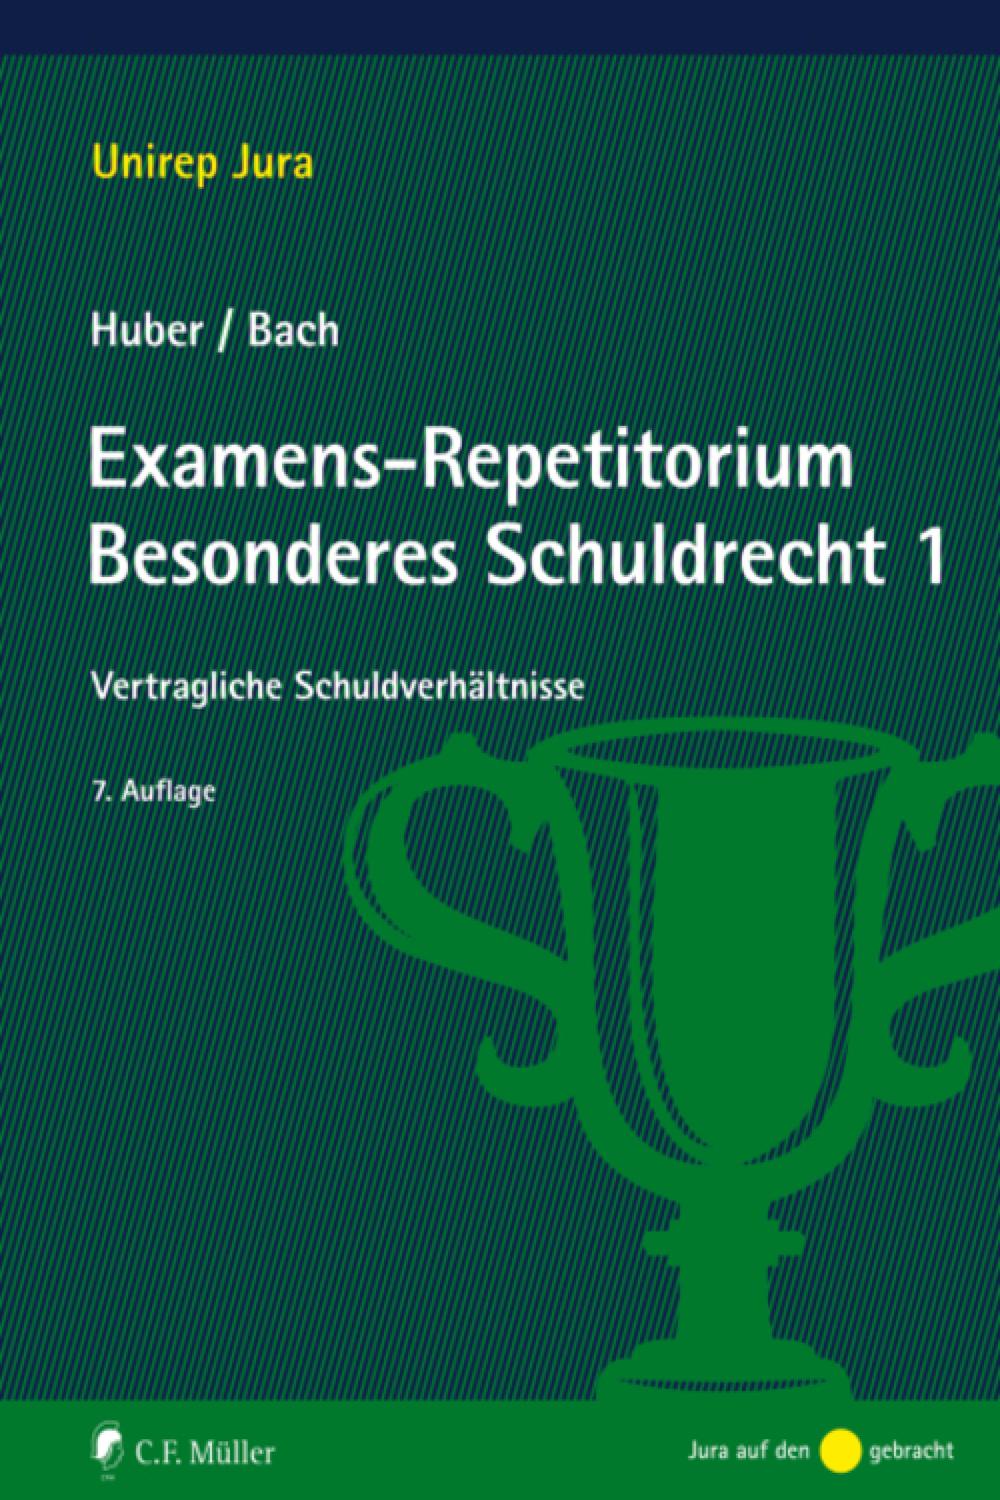 Examens-Repetitorium Besonderes Schuldrecht 1 - Peter Huber, Ivo Bach,,